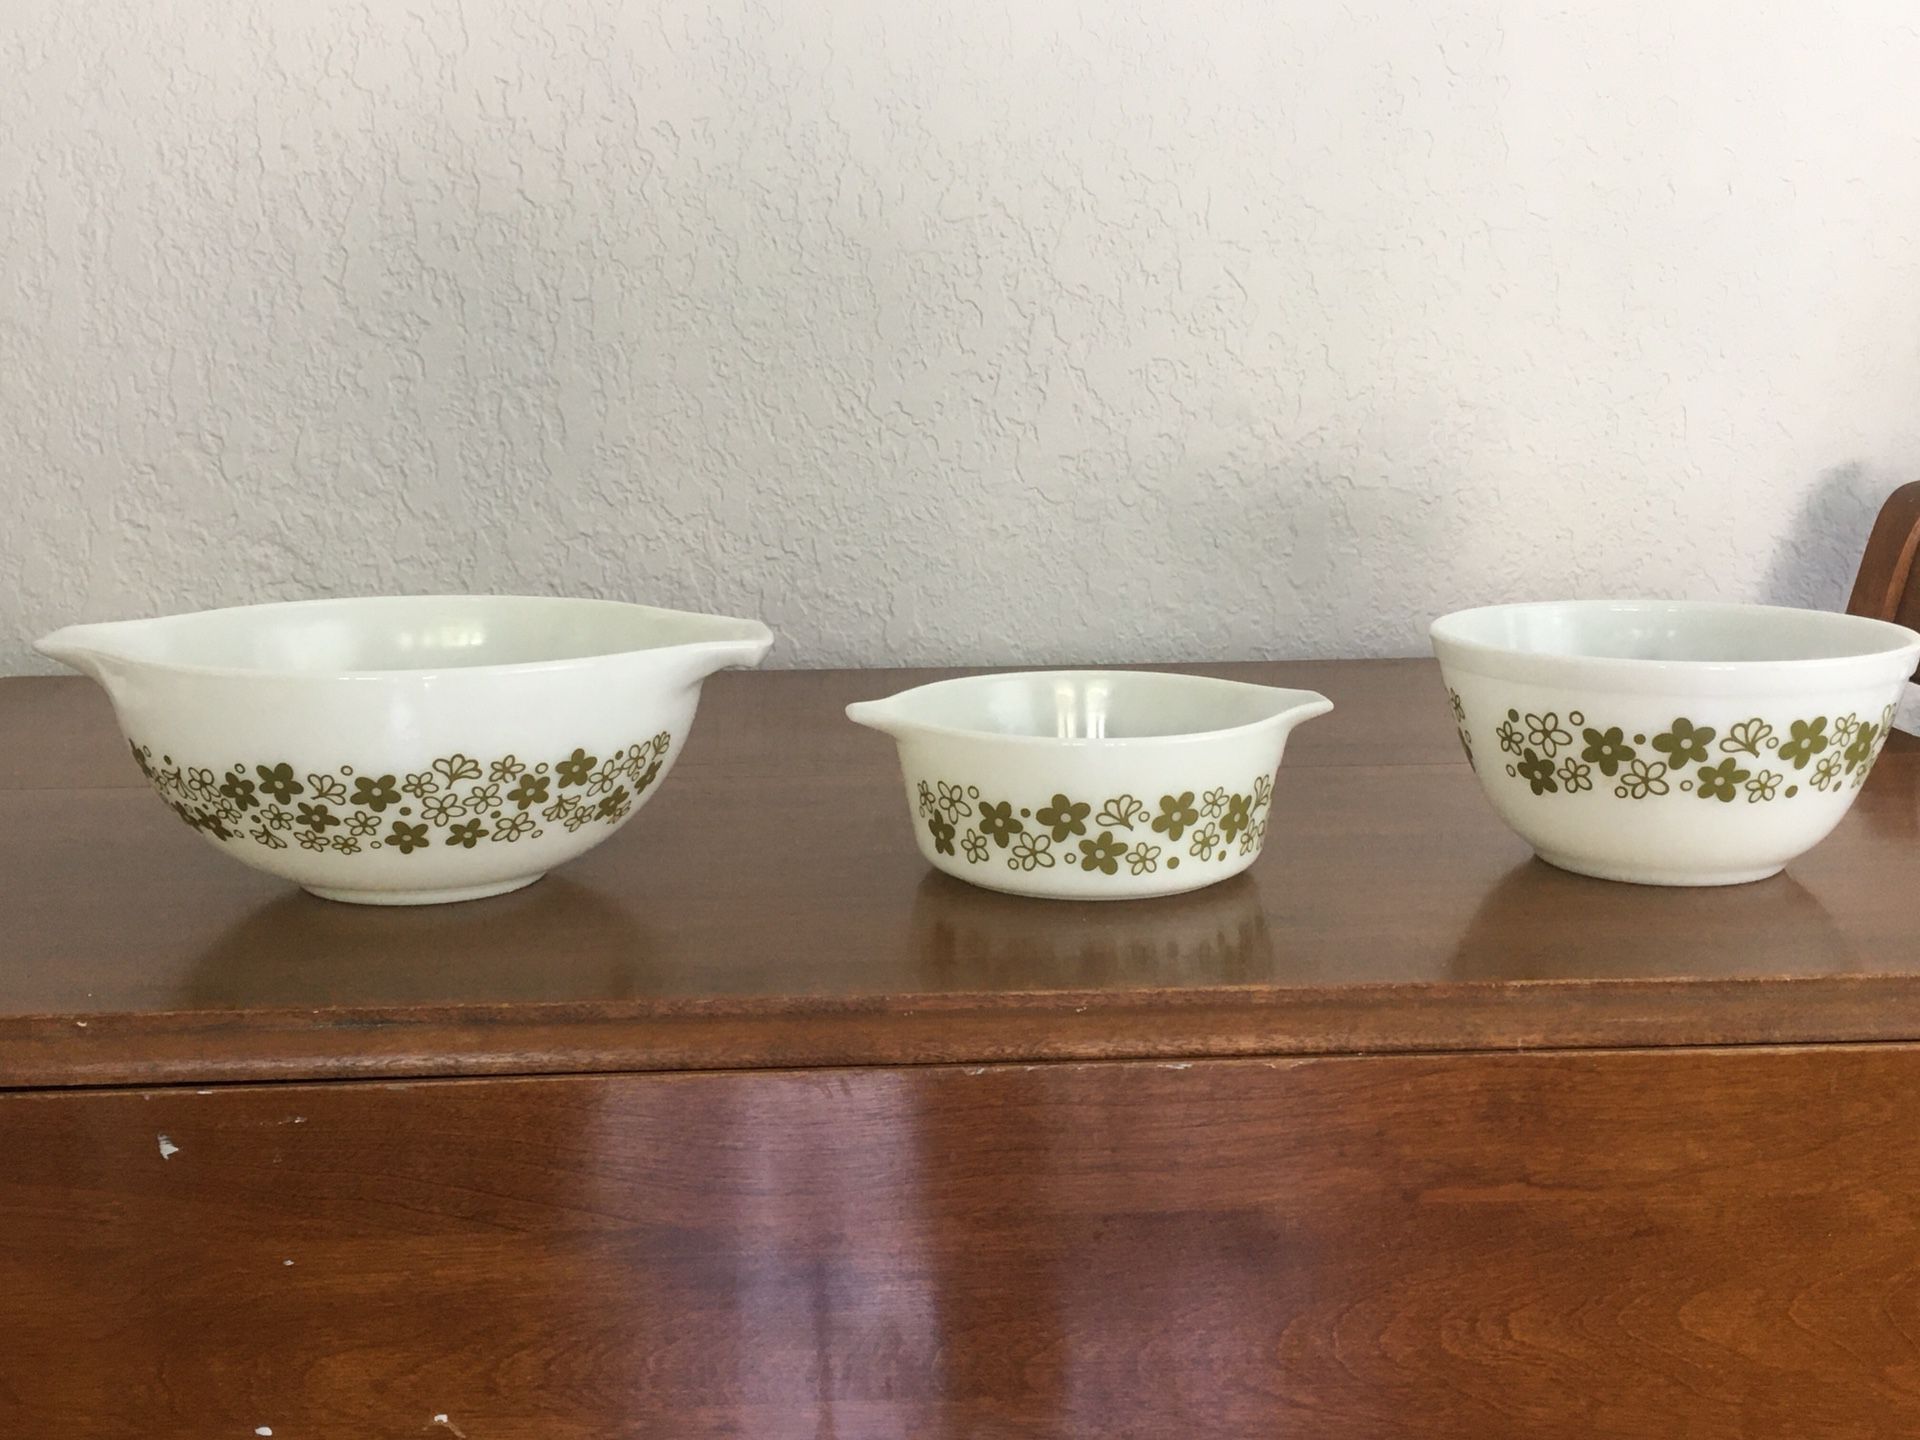 Pyrex bowls, spring blossom or crazy daisy design, 2 1/2 quart, 1 1/2 quart and 1 1/2 pint sizes